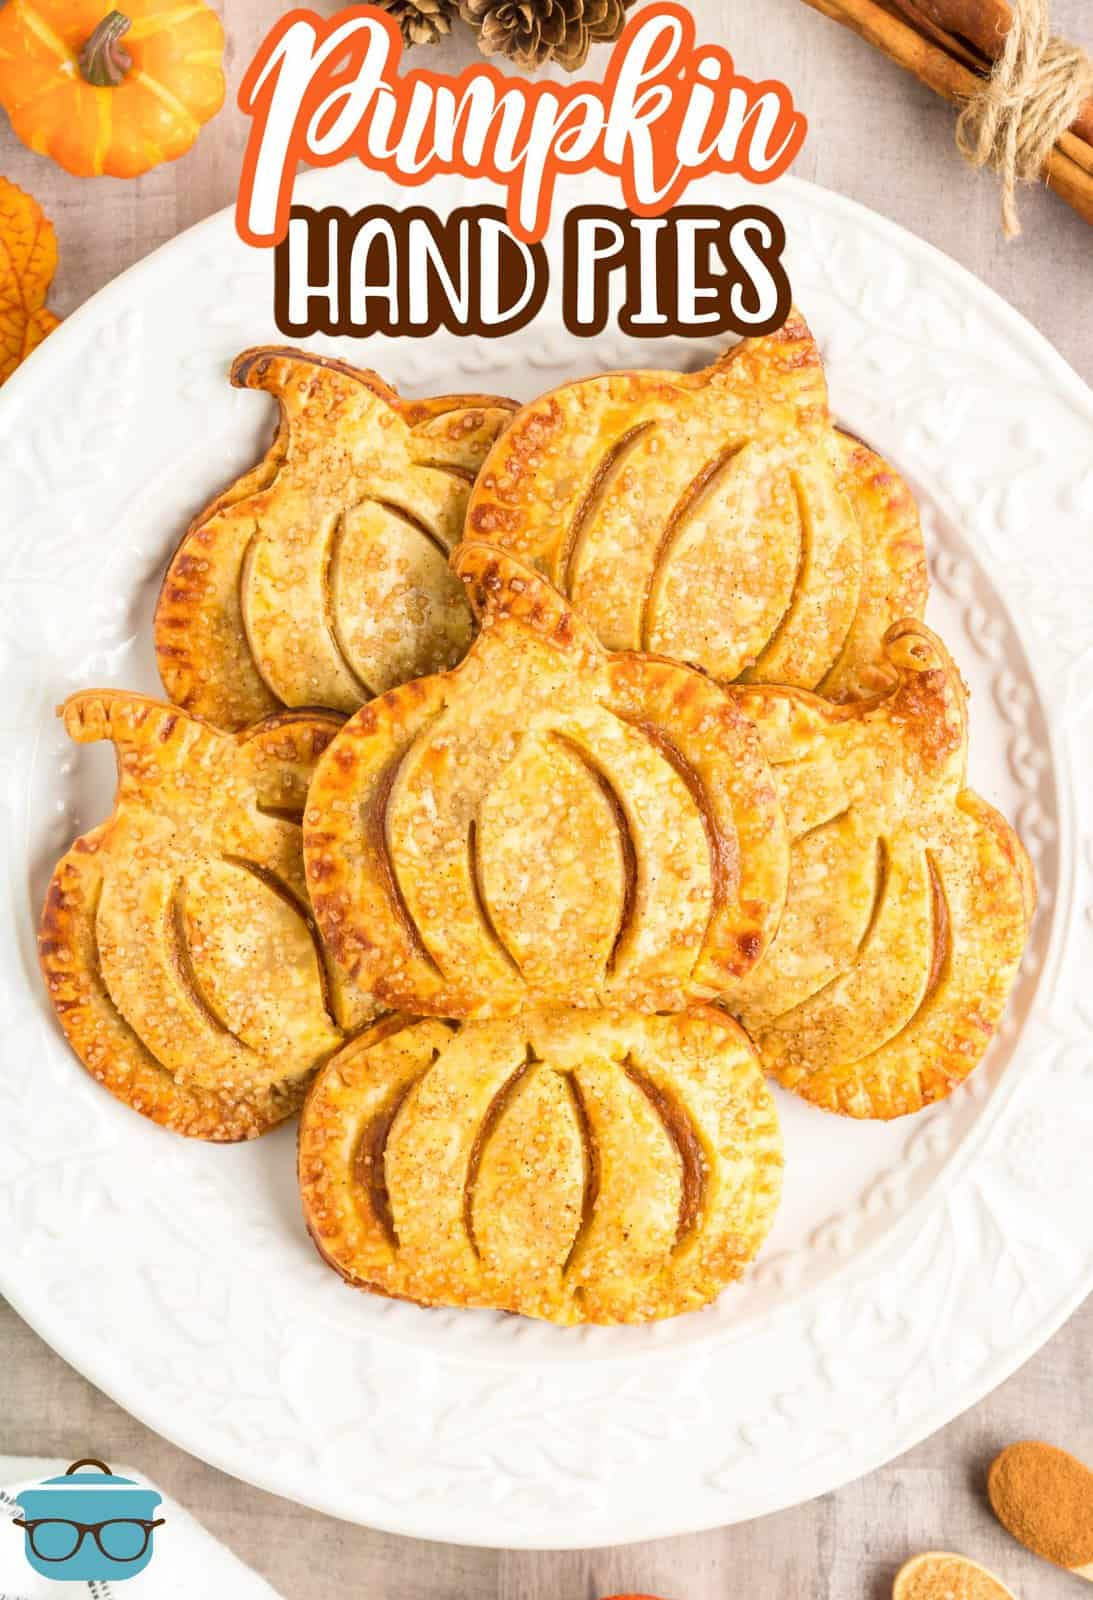 Immagine Pinterest sopra la testa di Pumpkin Hand Pies impilati su un piatto bianco.